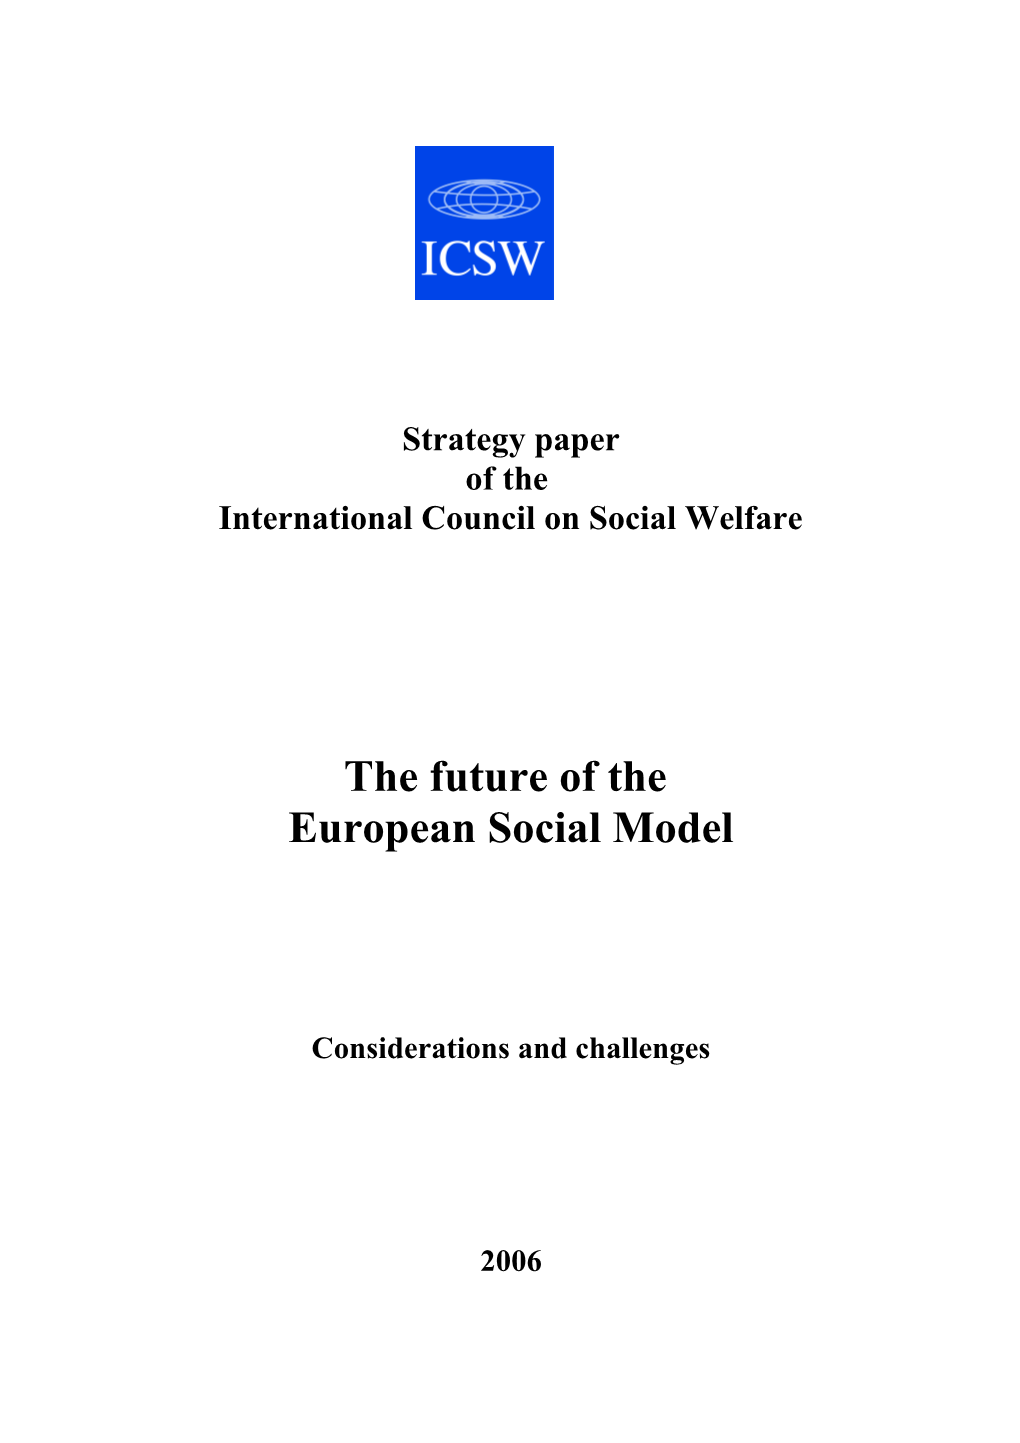 International Council on Social Welfare